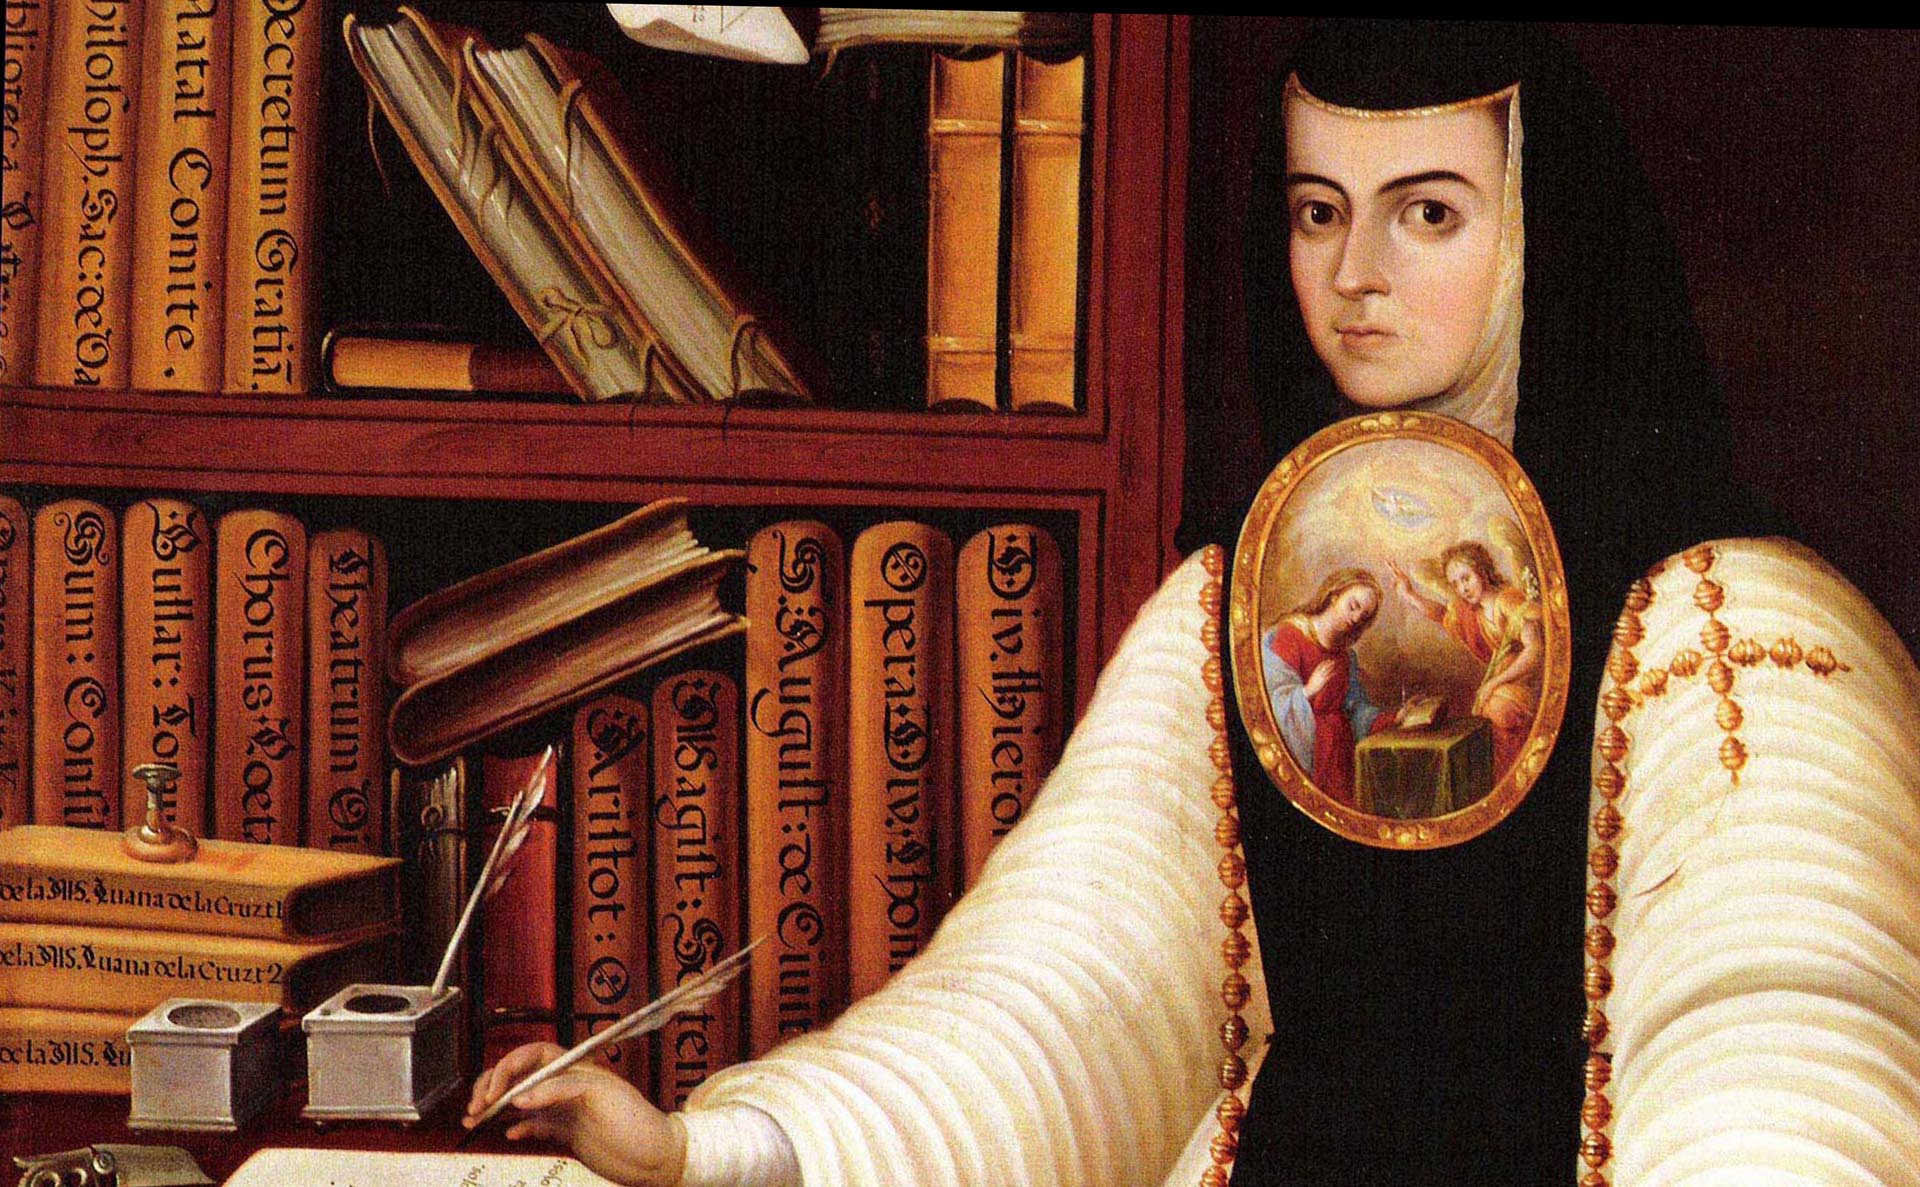 Se hizo monja para poder estudiar y la censuraron “por hereje”: sor Juana, la poeta rebelde que hablaba con sus silencios